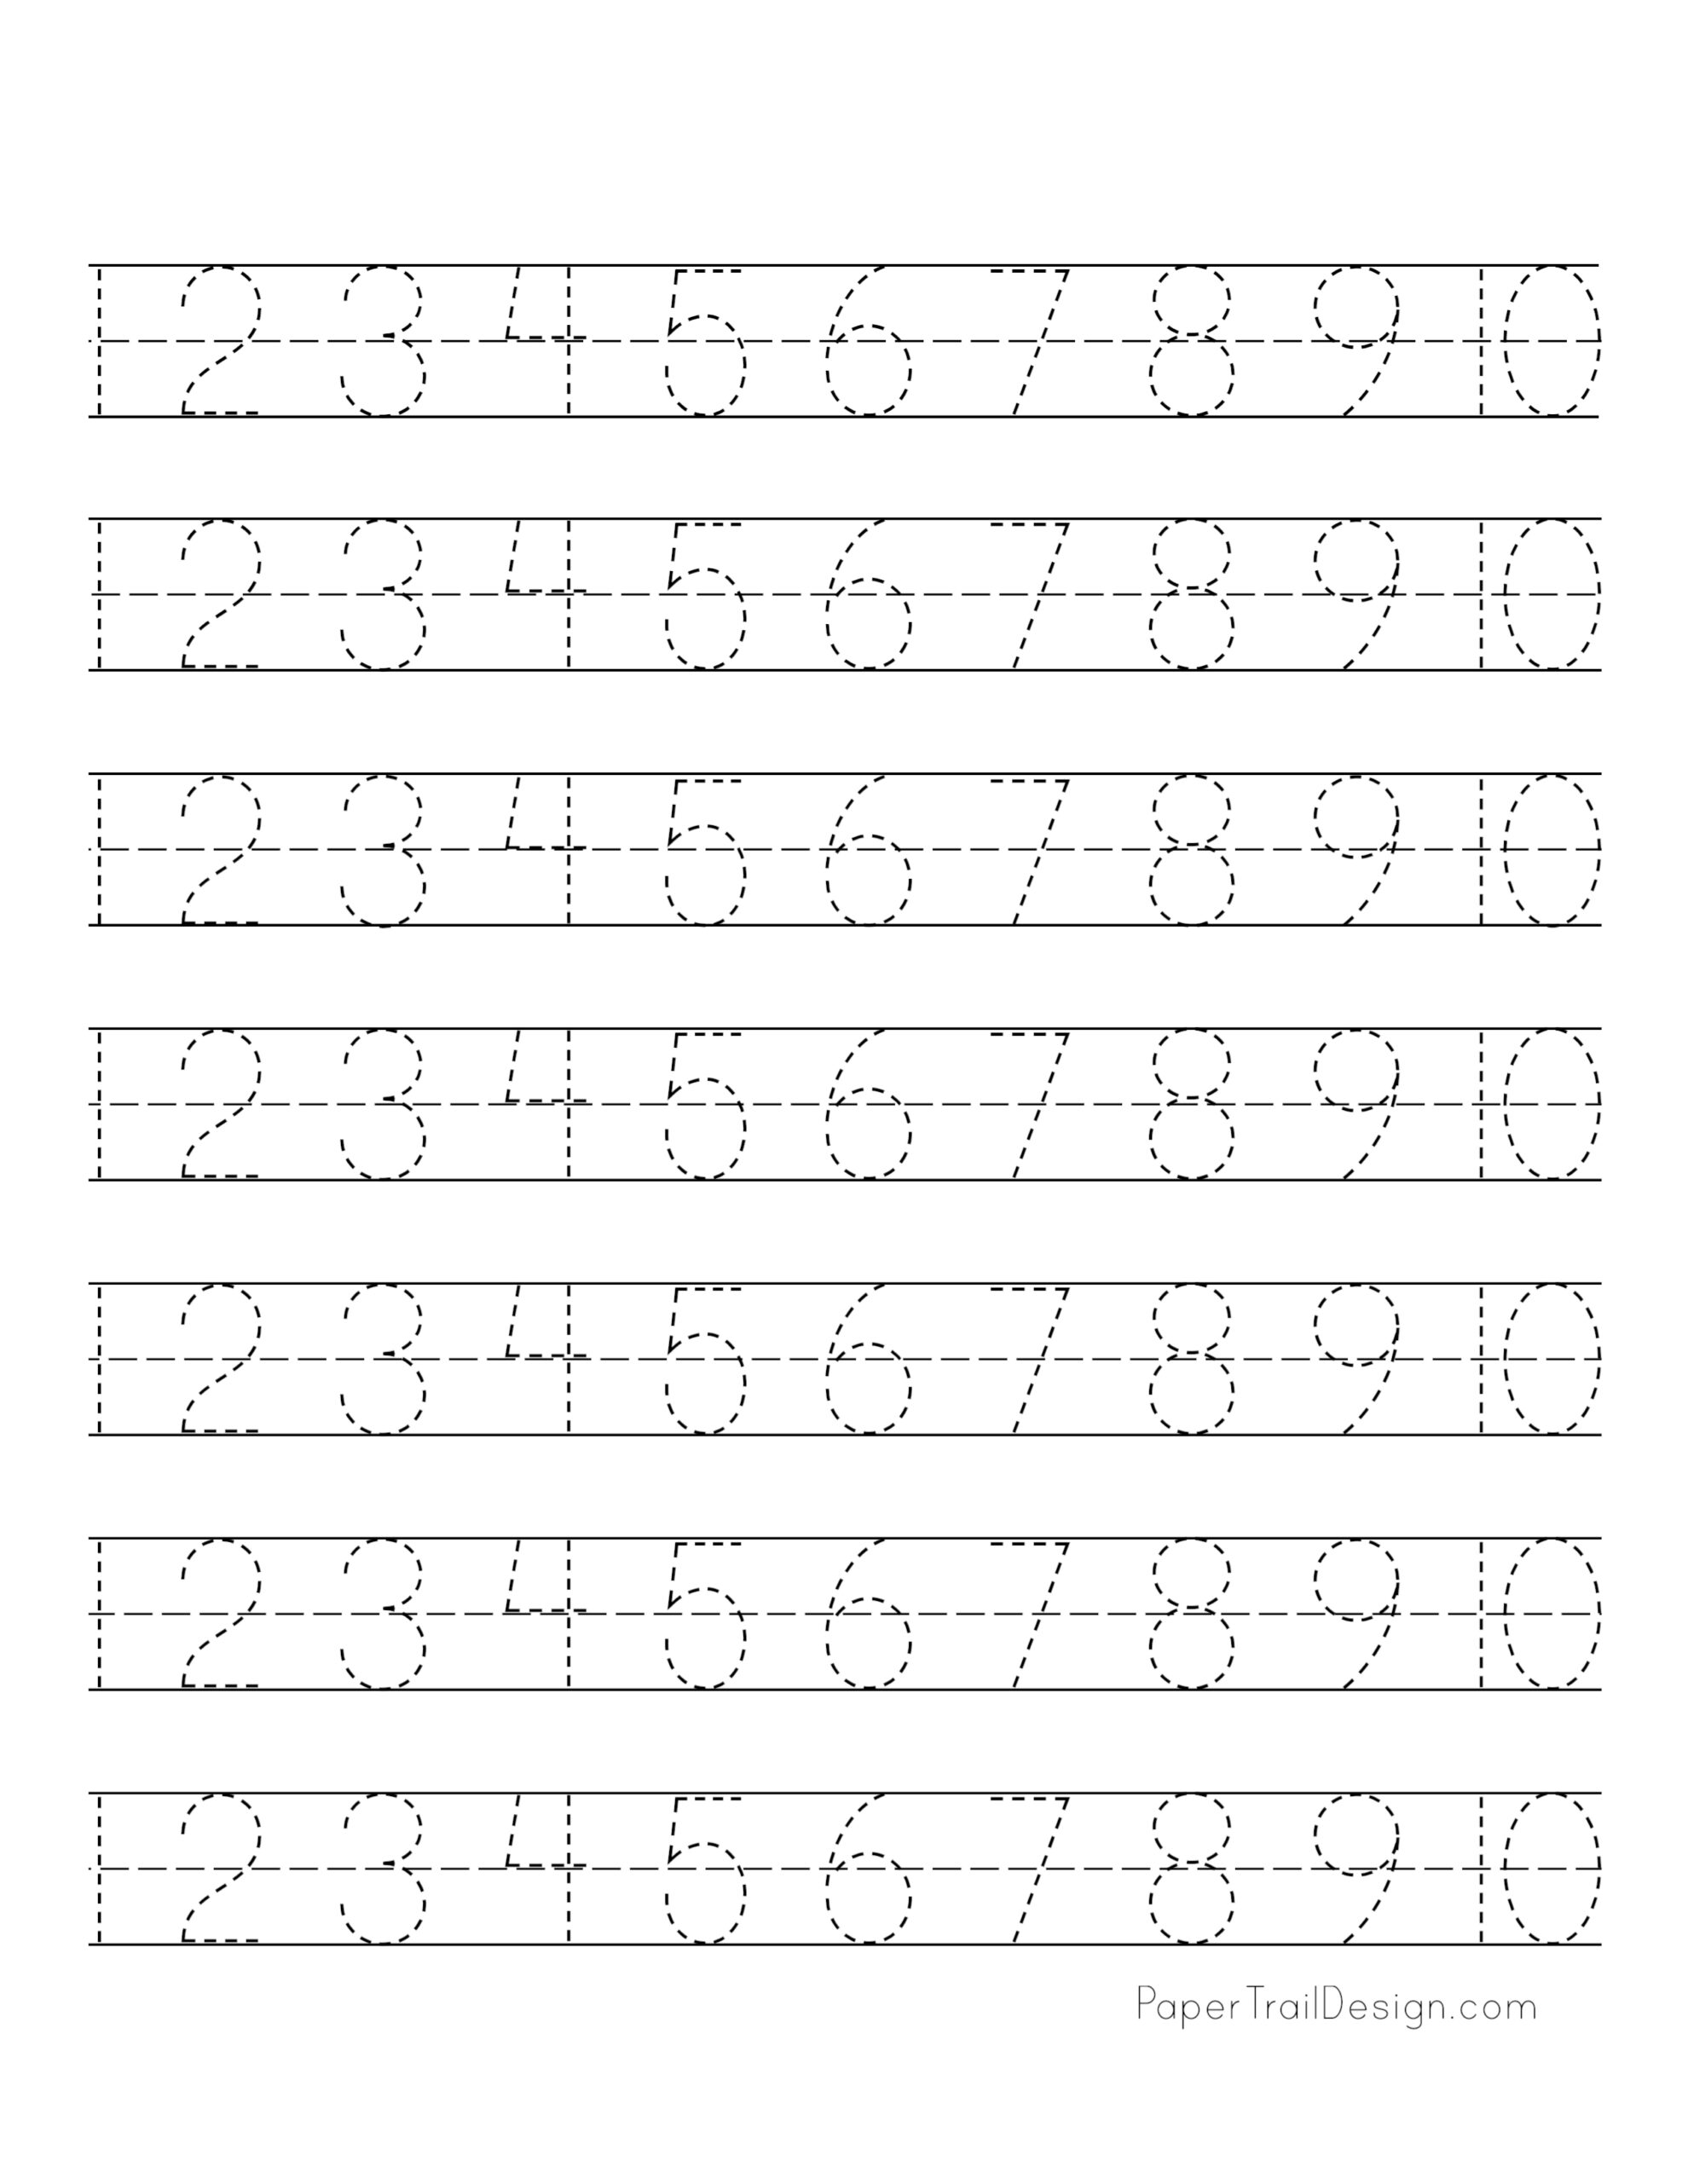 tracing-numbers-worksheets-free-printable